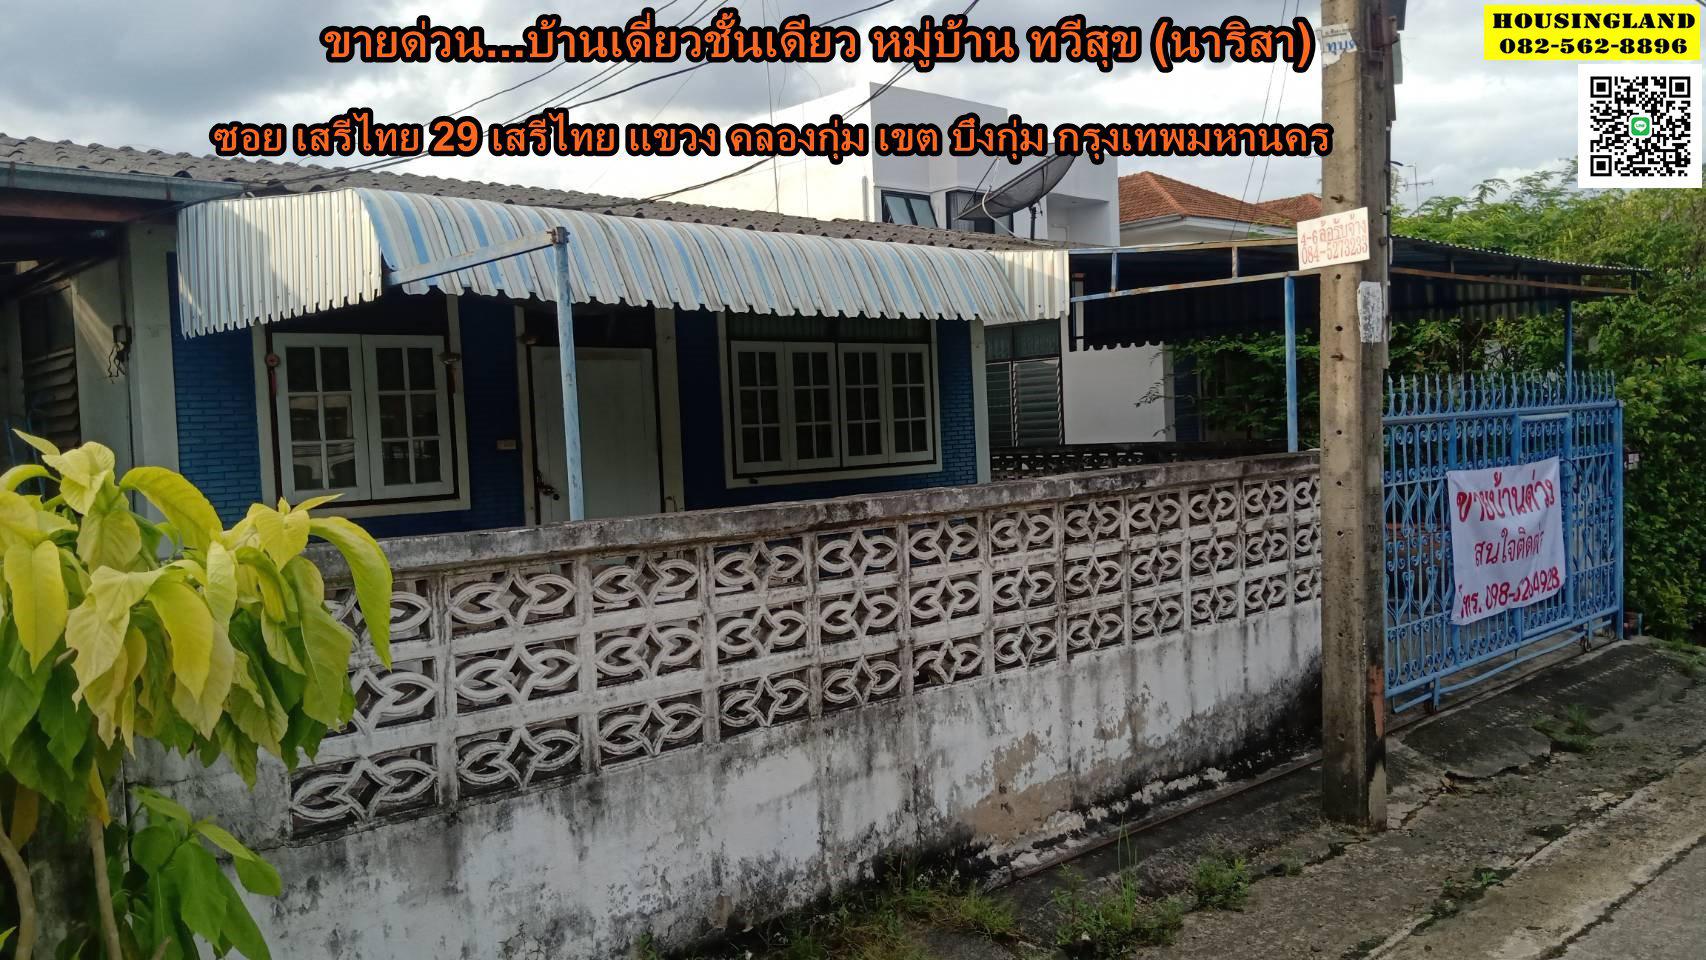 ขายบ้านเสรีไทยบึงกุ่ม ขายบ้านชั้นเดียว เสรีไทย 29 หมู่บ้าน ทวีสุข (นริสรา) ซอย เสรีไทย 29 